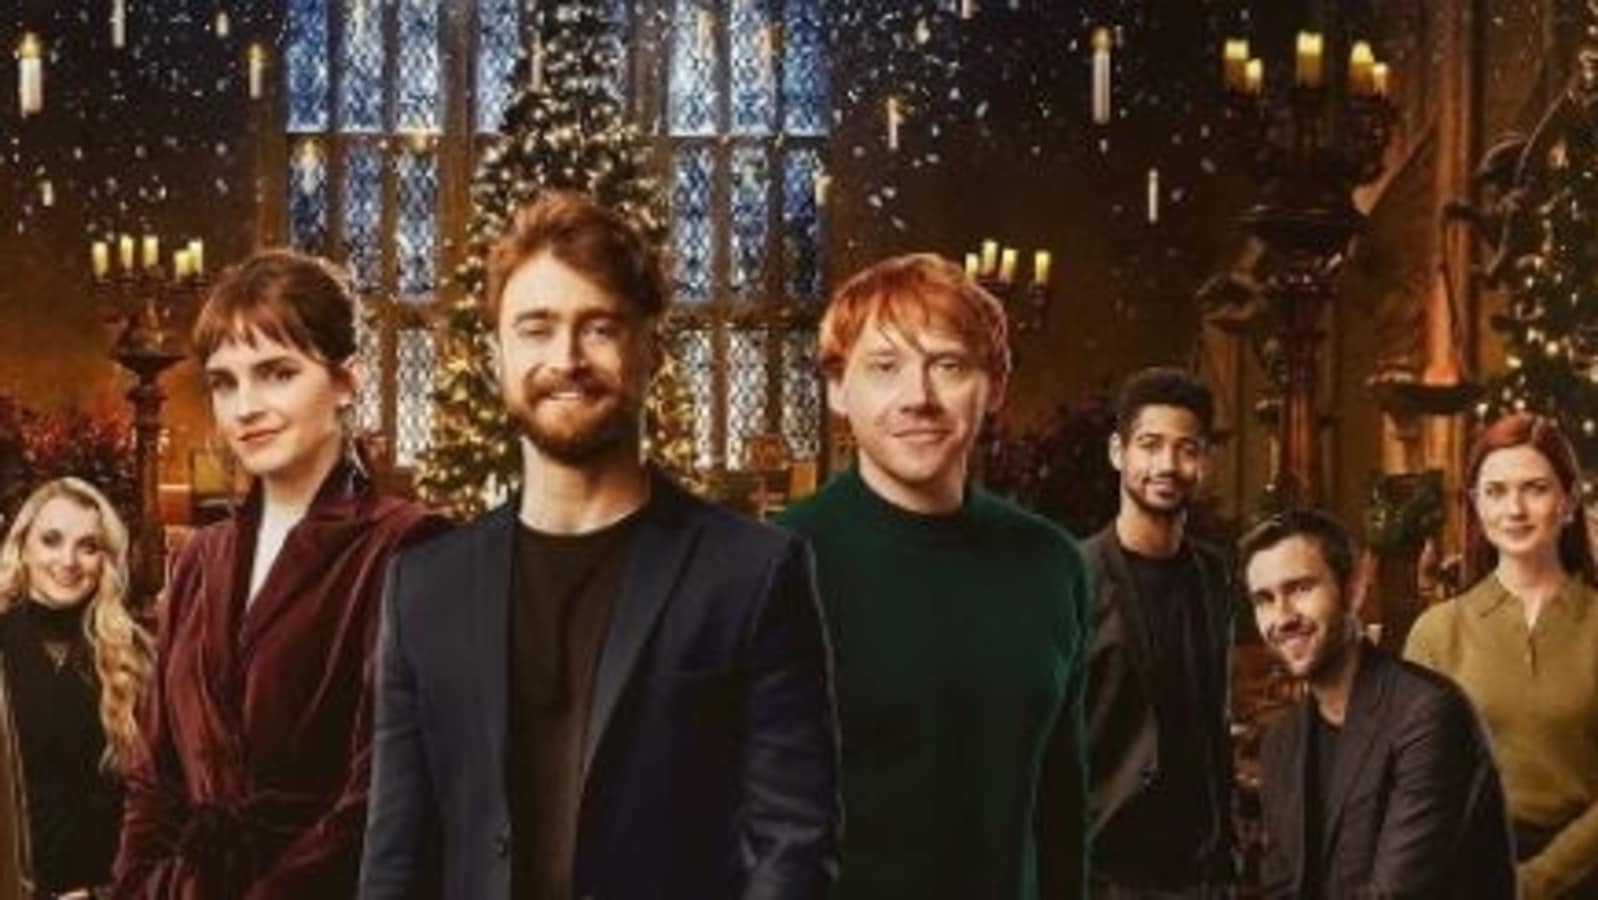 Harry Potter Return To Hogwarts Poster Daniel Radcliffe Emma Watson Rupert Grint Assemble